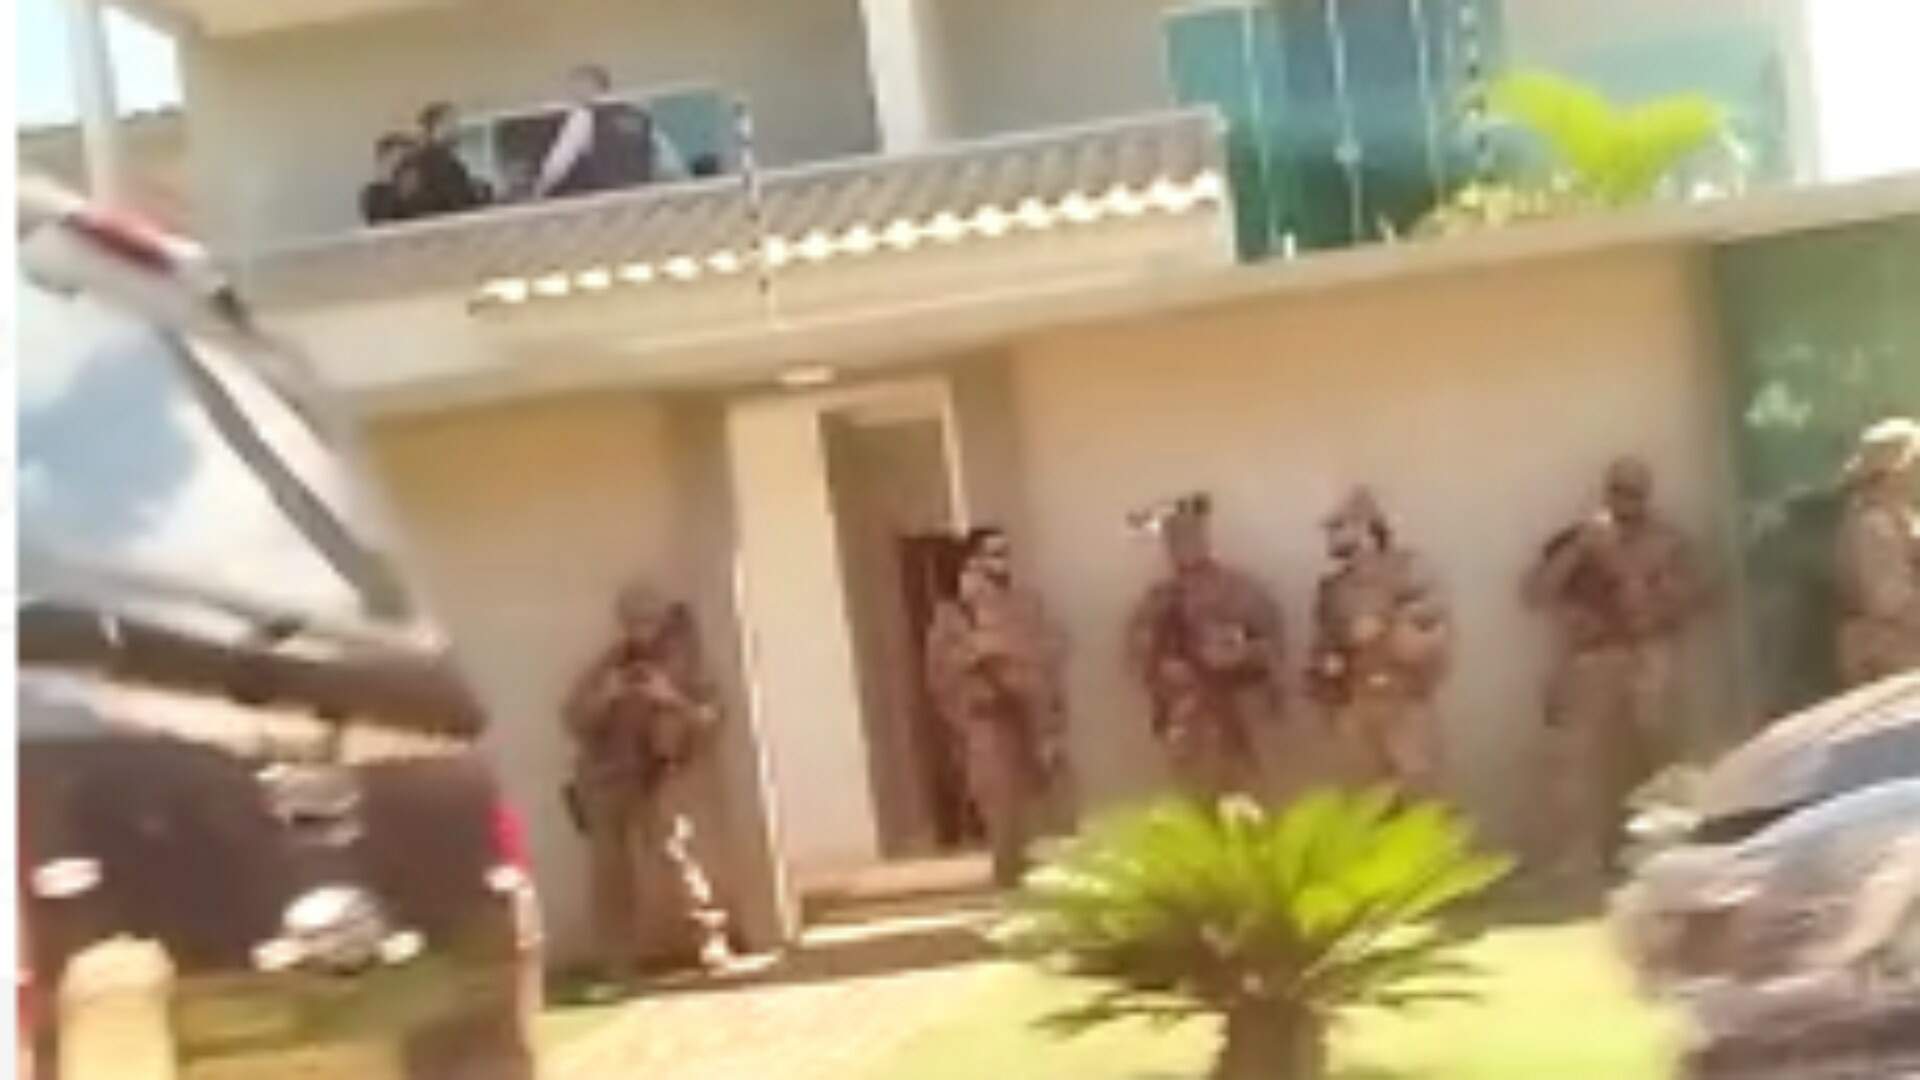 VÍDEO: Ação em residência na fronteira mobiliza equipes da Polícia Civil e Polícia Federal